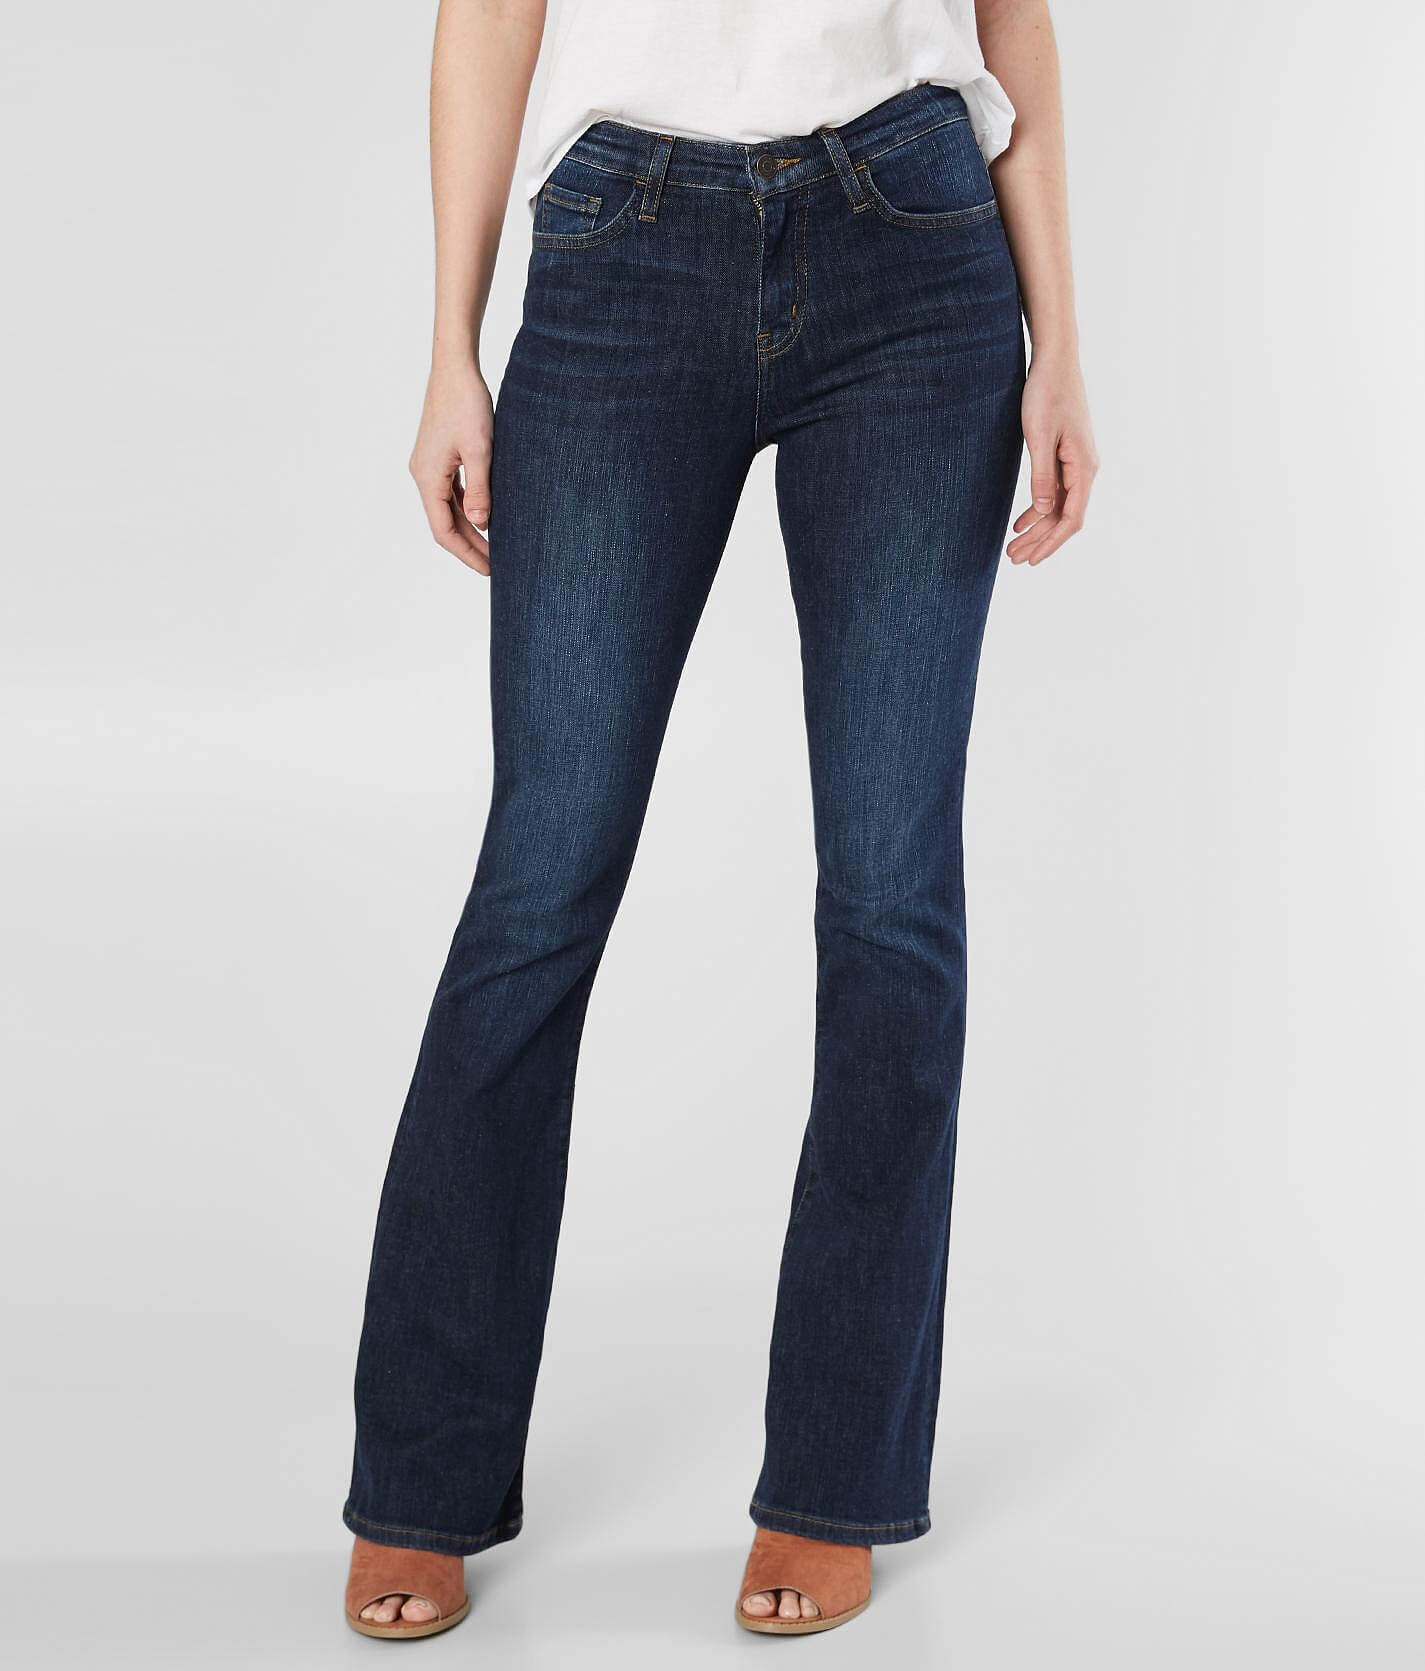 levis 527 slim boot cut jeans